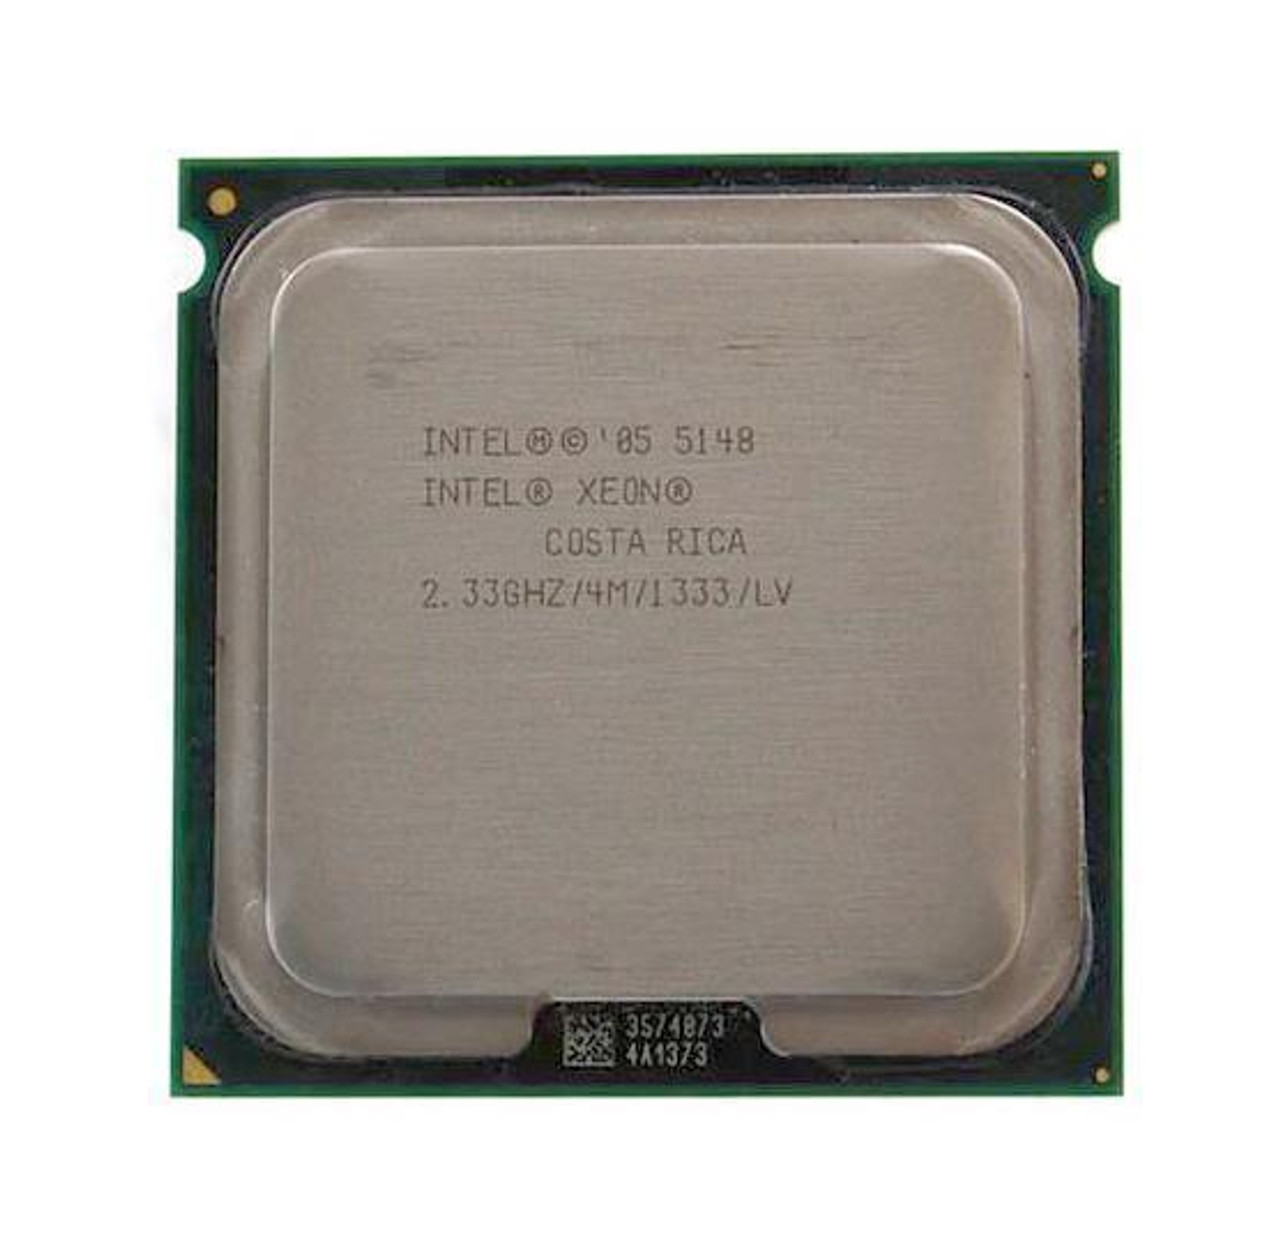 BX805565148A Intel Xeon LV 5148 Dual Core 2.33GHz 1333MHz FSB 4MB L2 Cache Socket LGA771 Processor